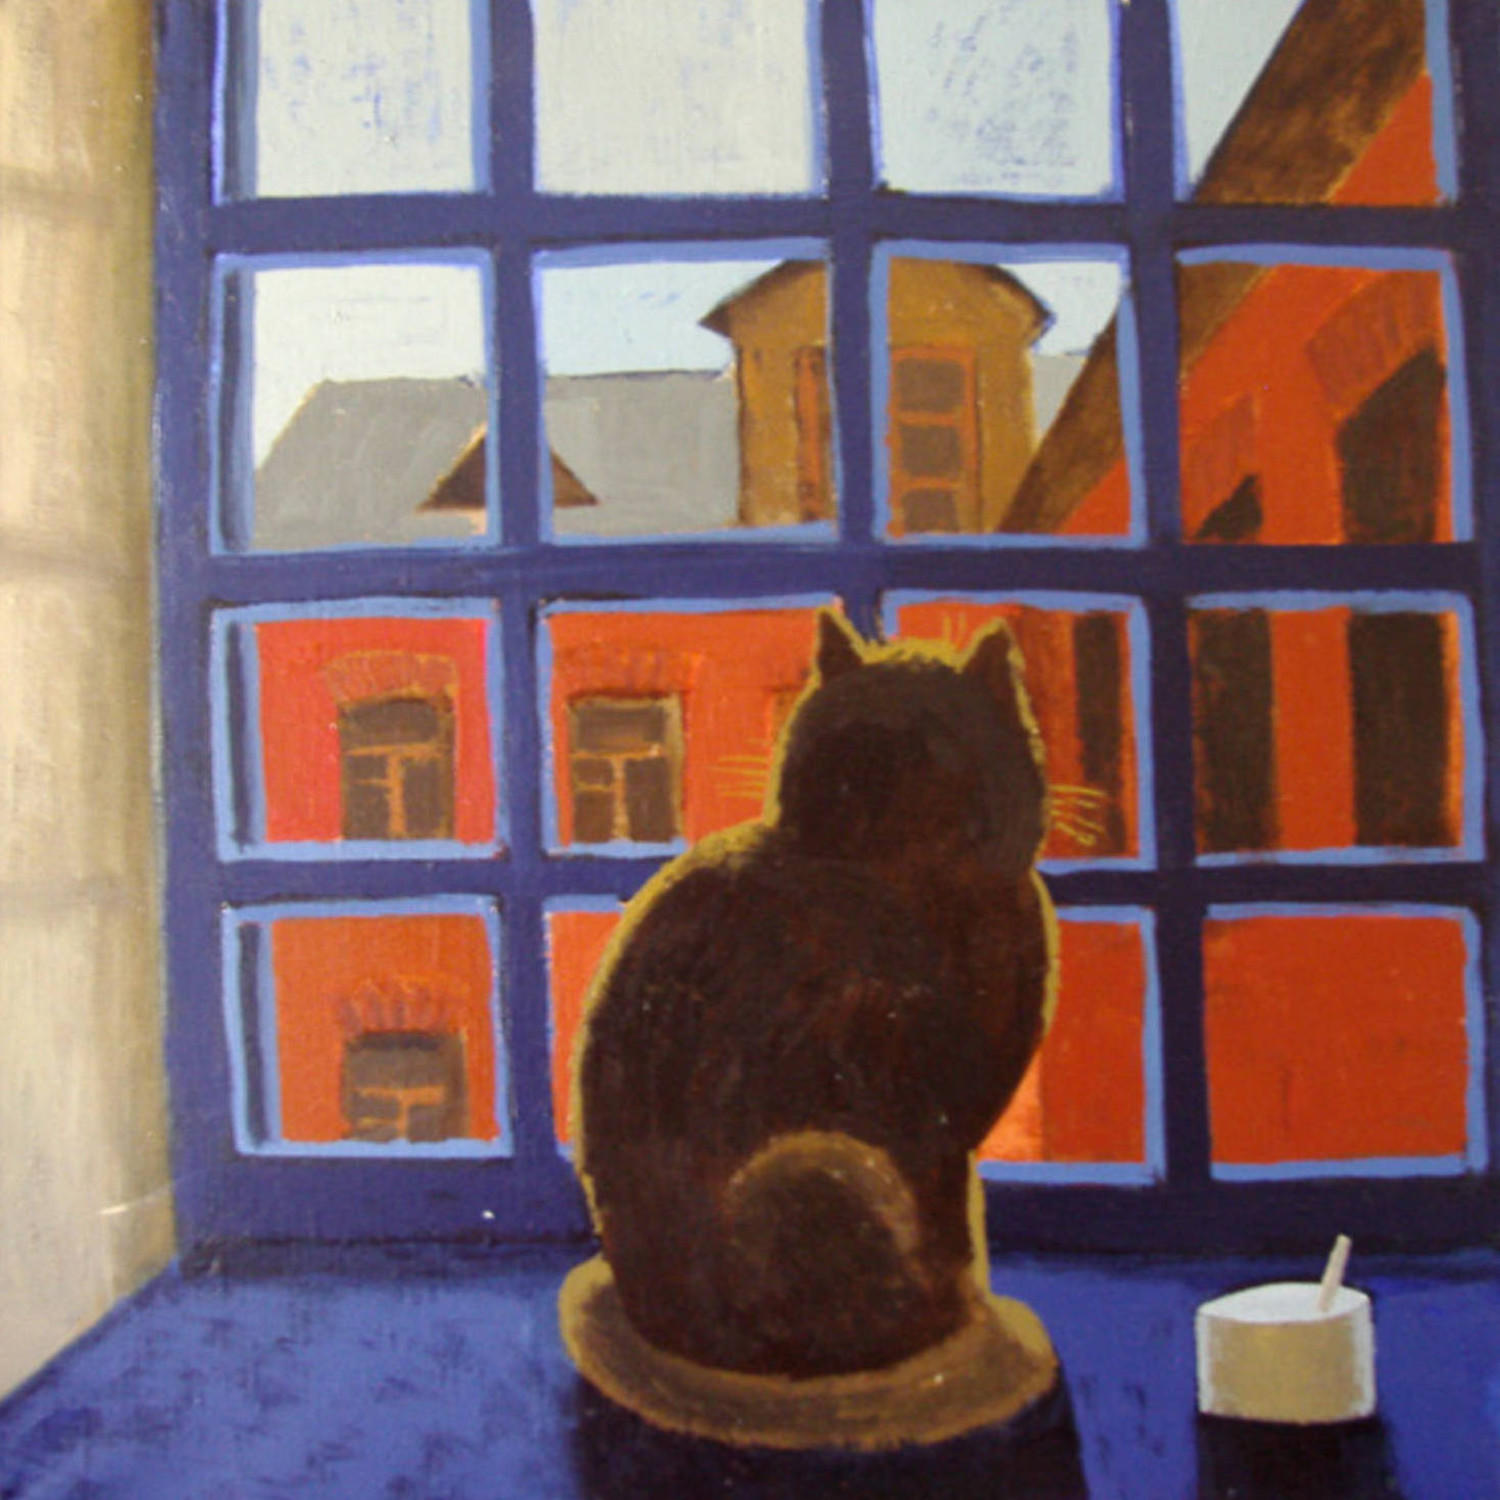 Кот у окна на лестнице (Окно). Екатерина Татарская. 2004, холст, масло, 60x60